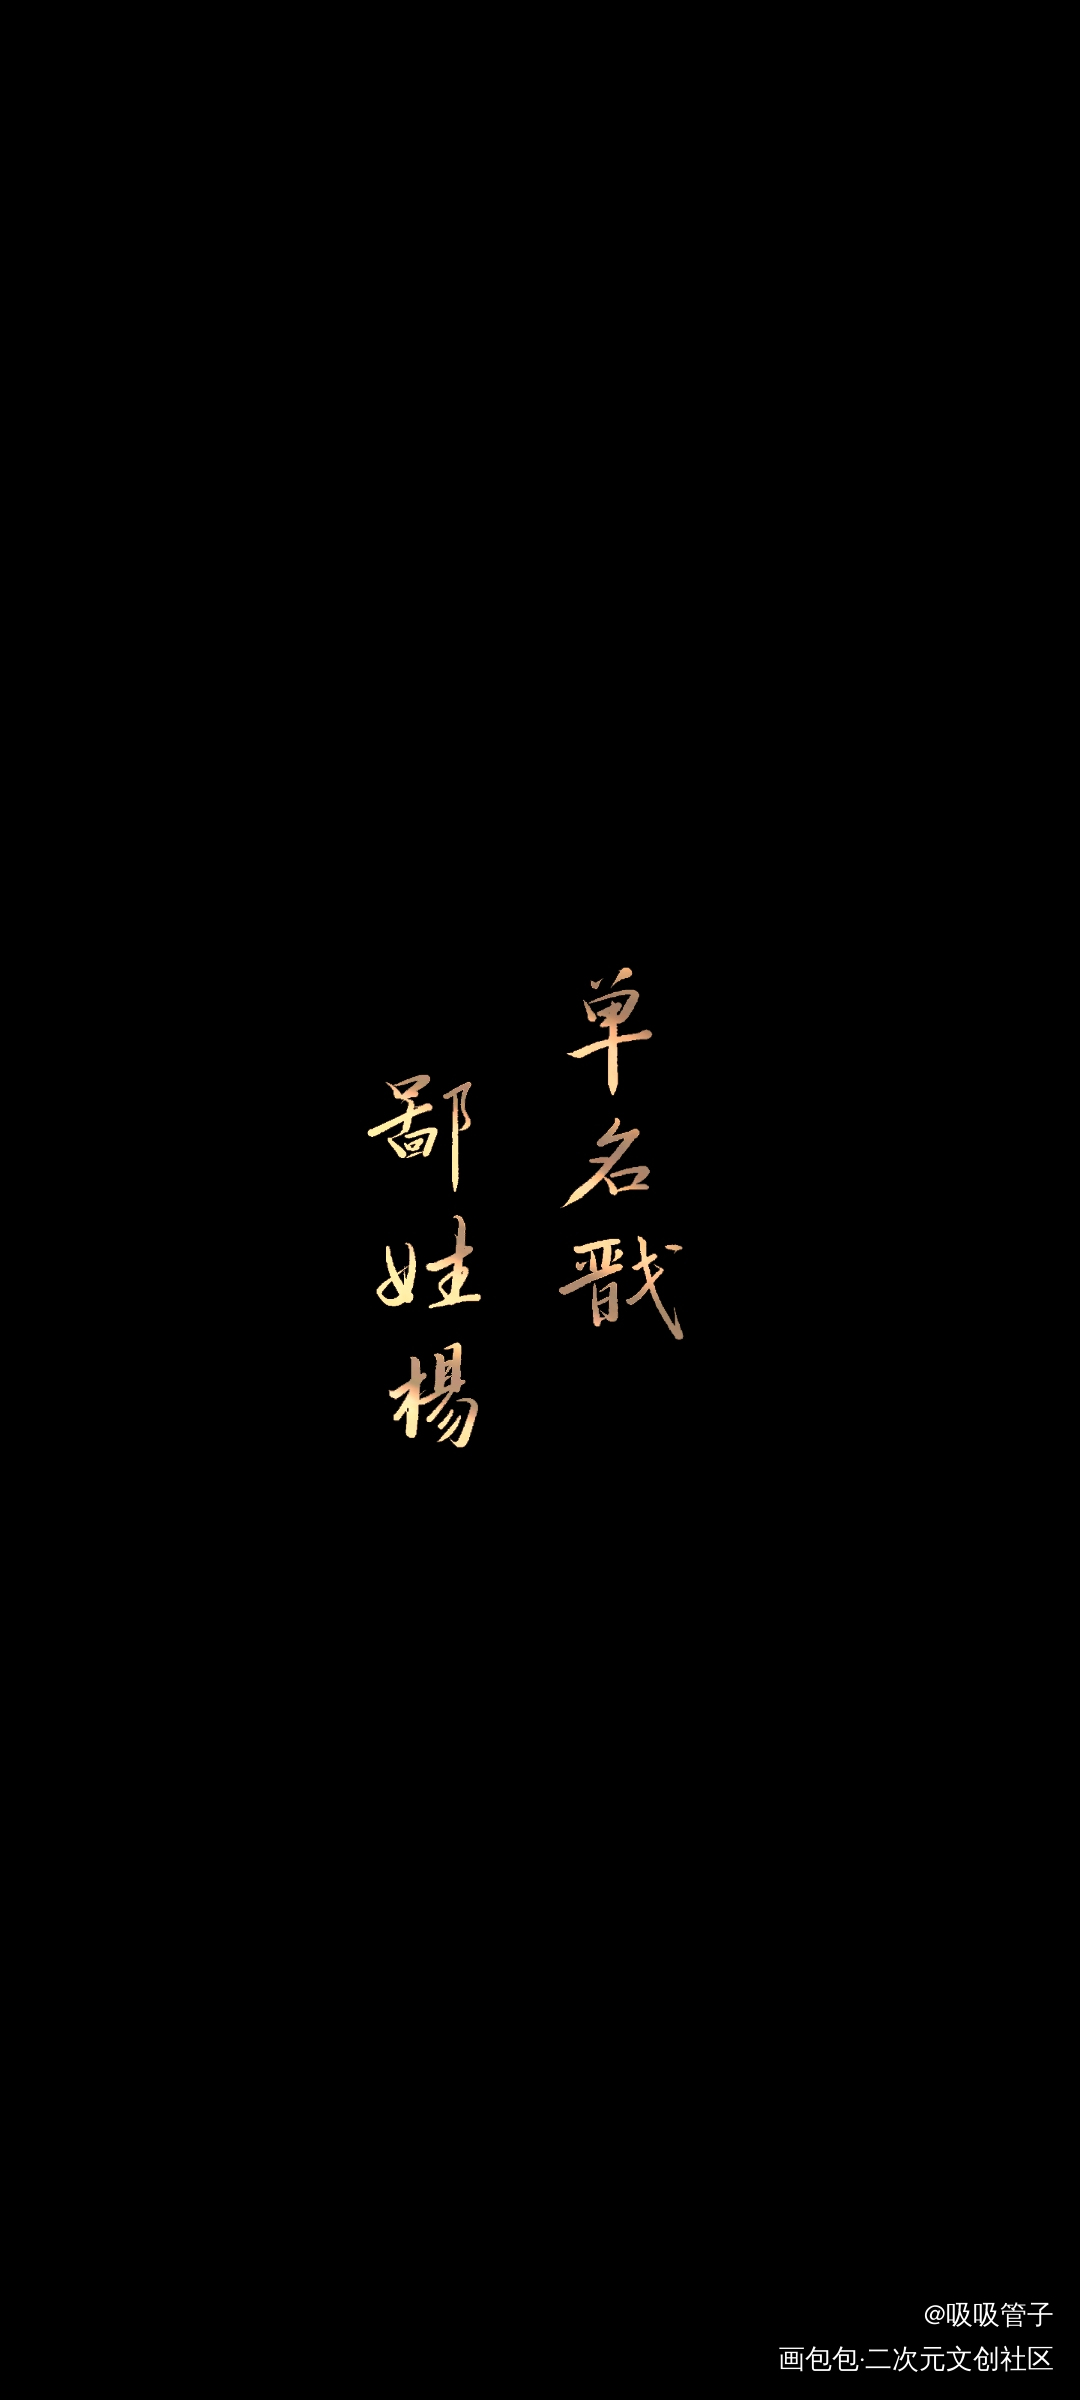 杨戬_新神榜杨戬数位板手写字体设计见字如晤绘画作品